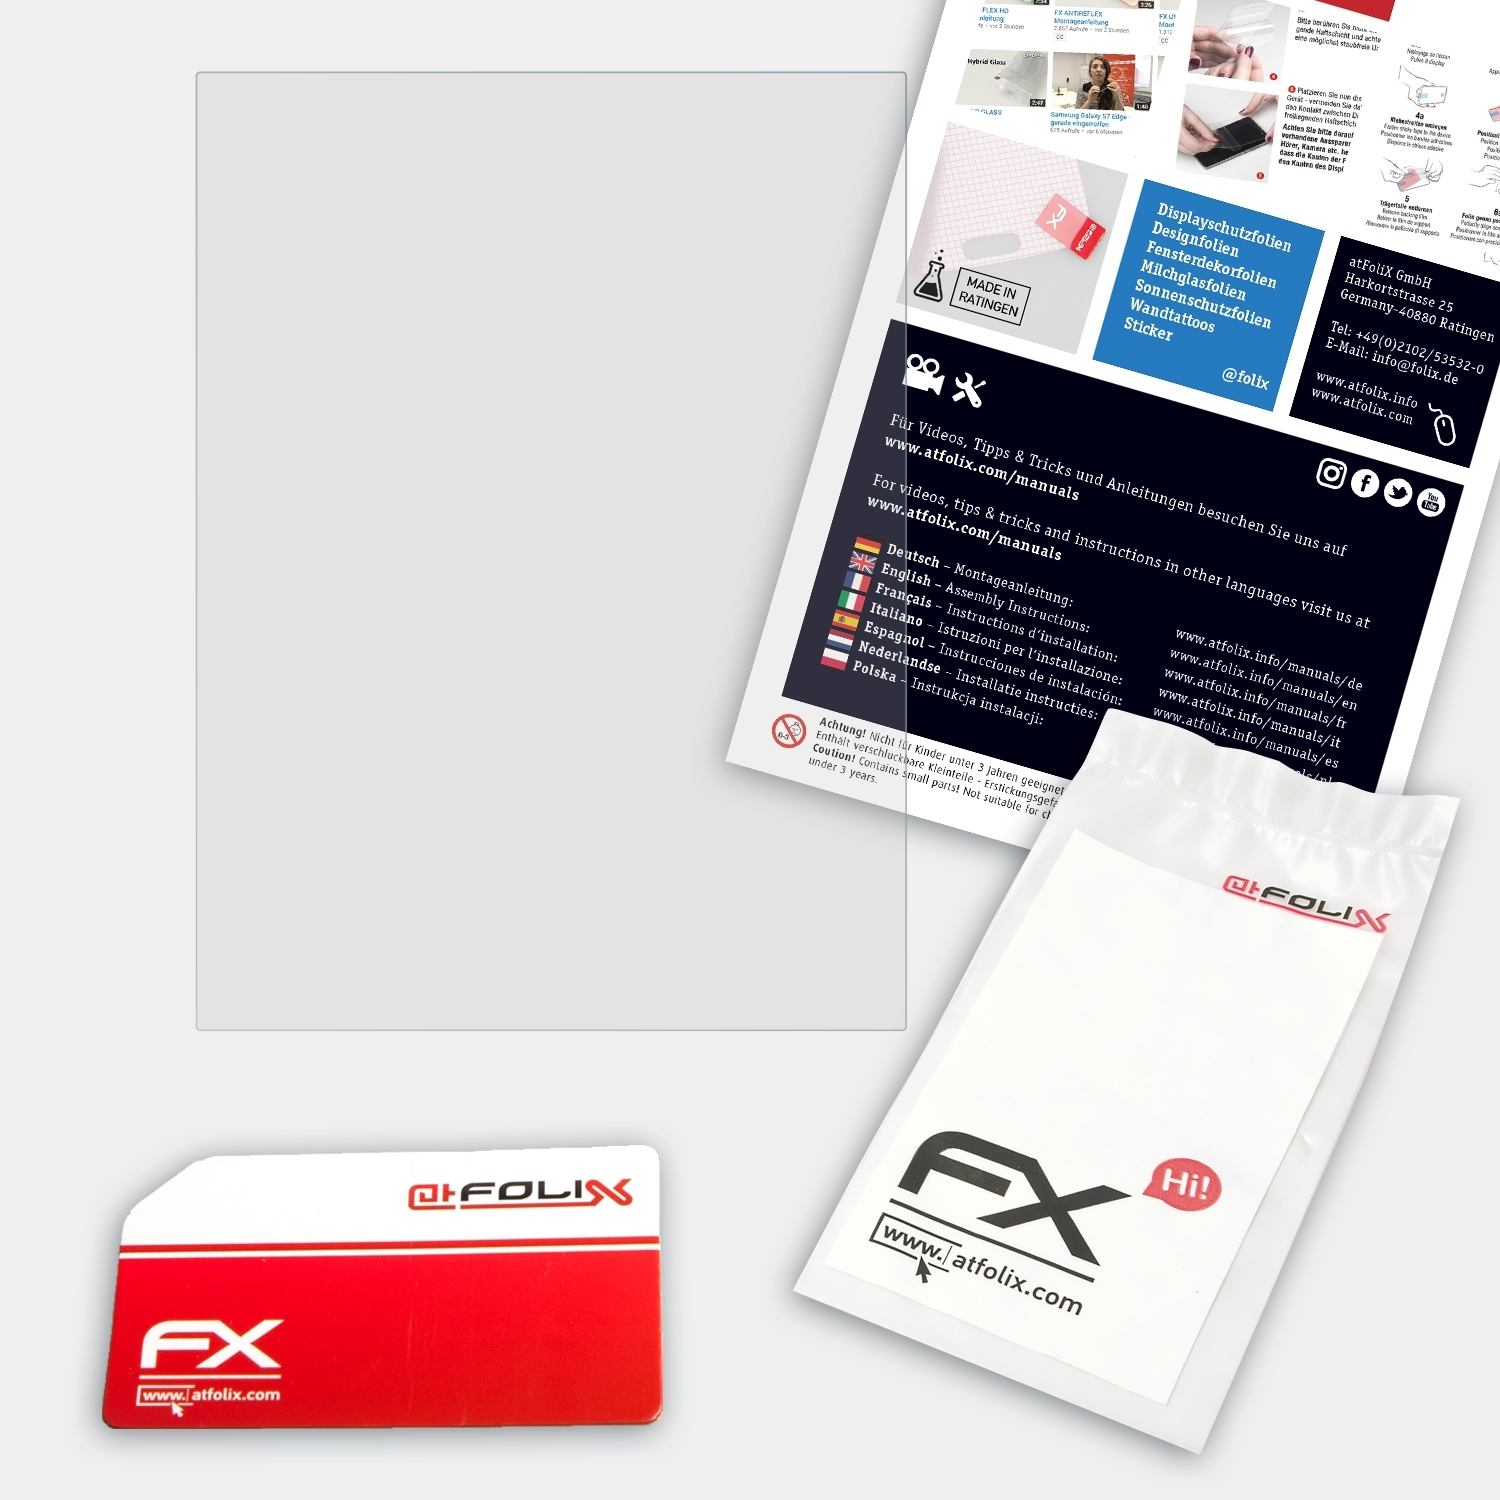 ATFOLIX FX-Hybrid-Glass Schutzglas(für 2) PocketBook Basic